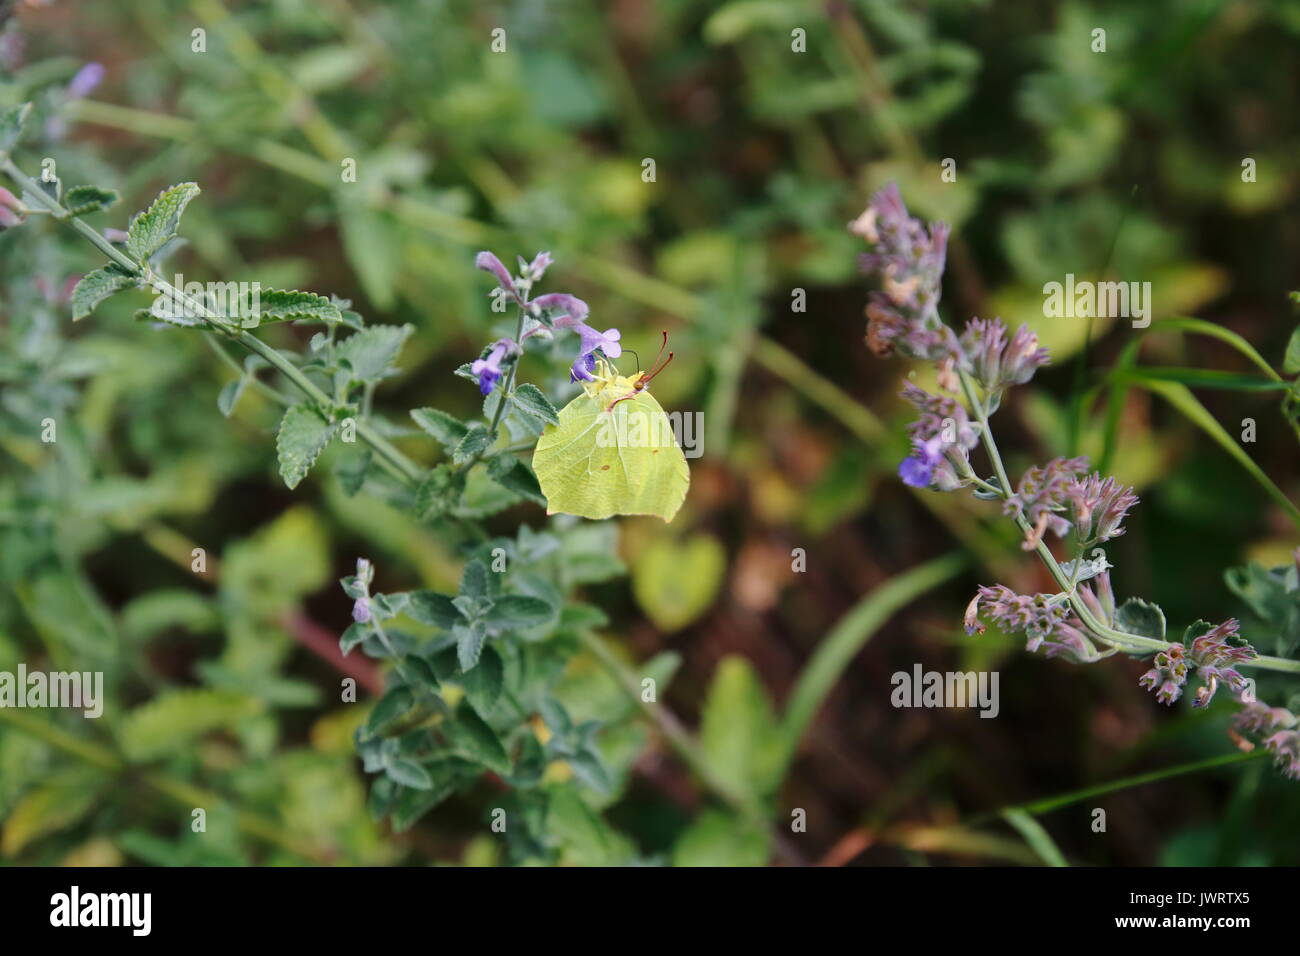 Zitronenfalter, Gonepteryx rhamni, Tagfalter, Gelber Schmetterling Stock Photo